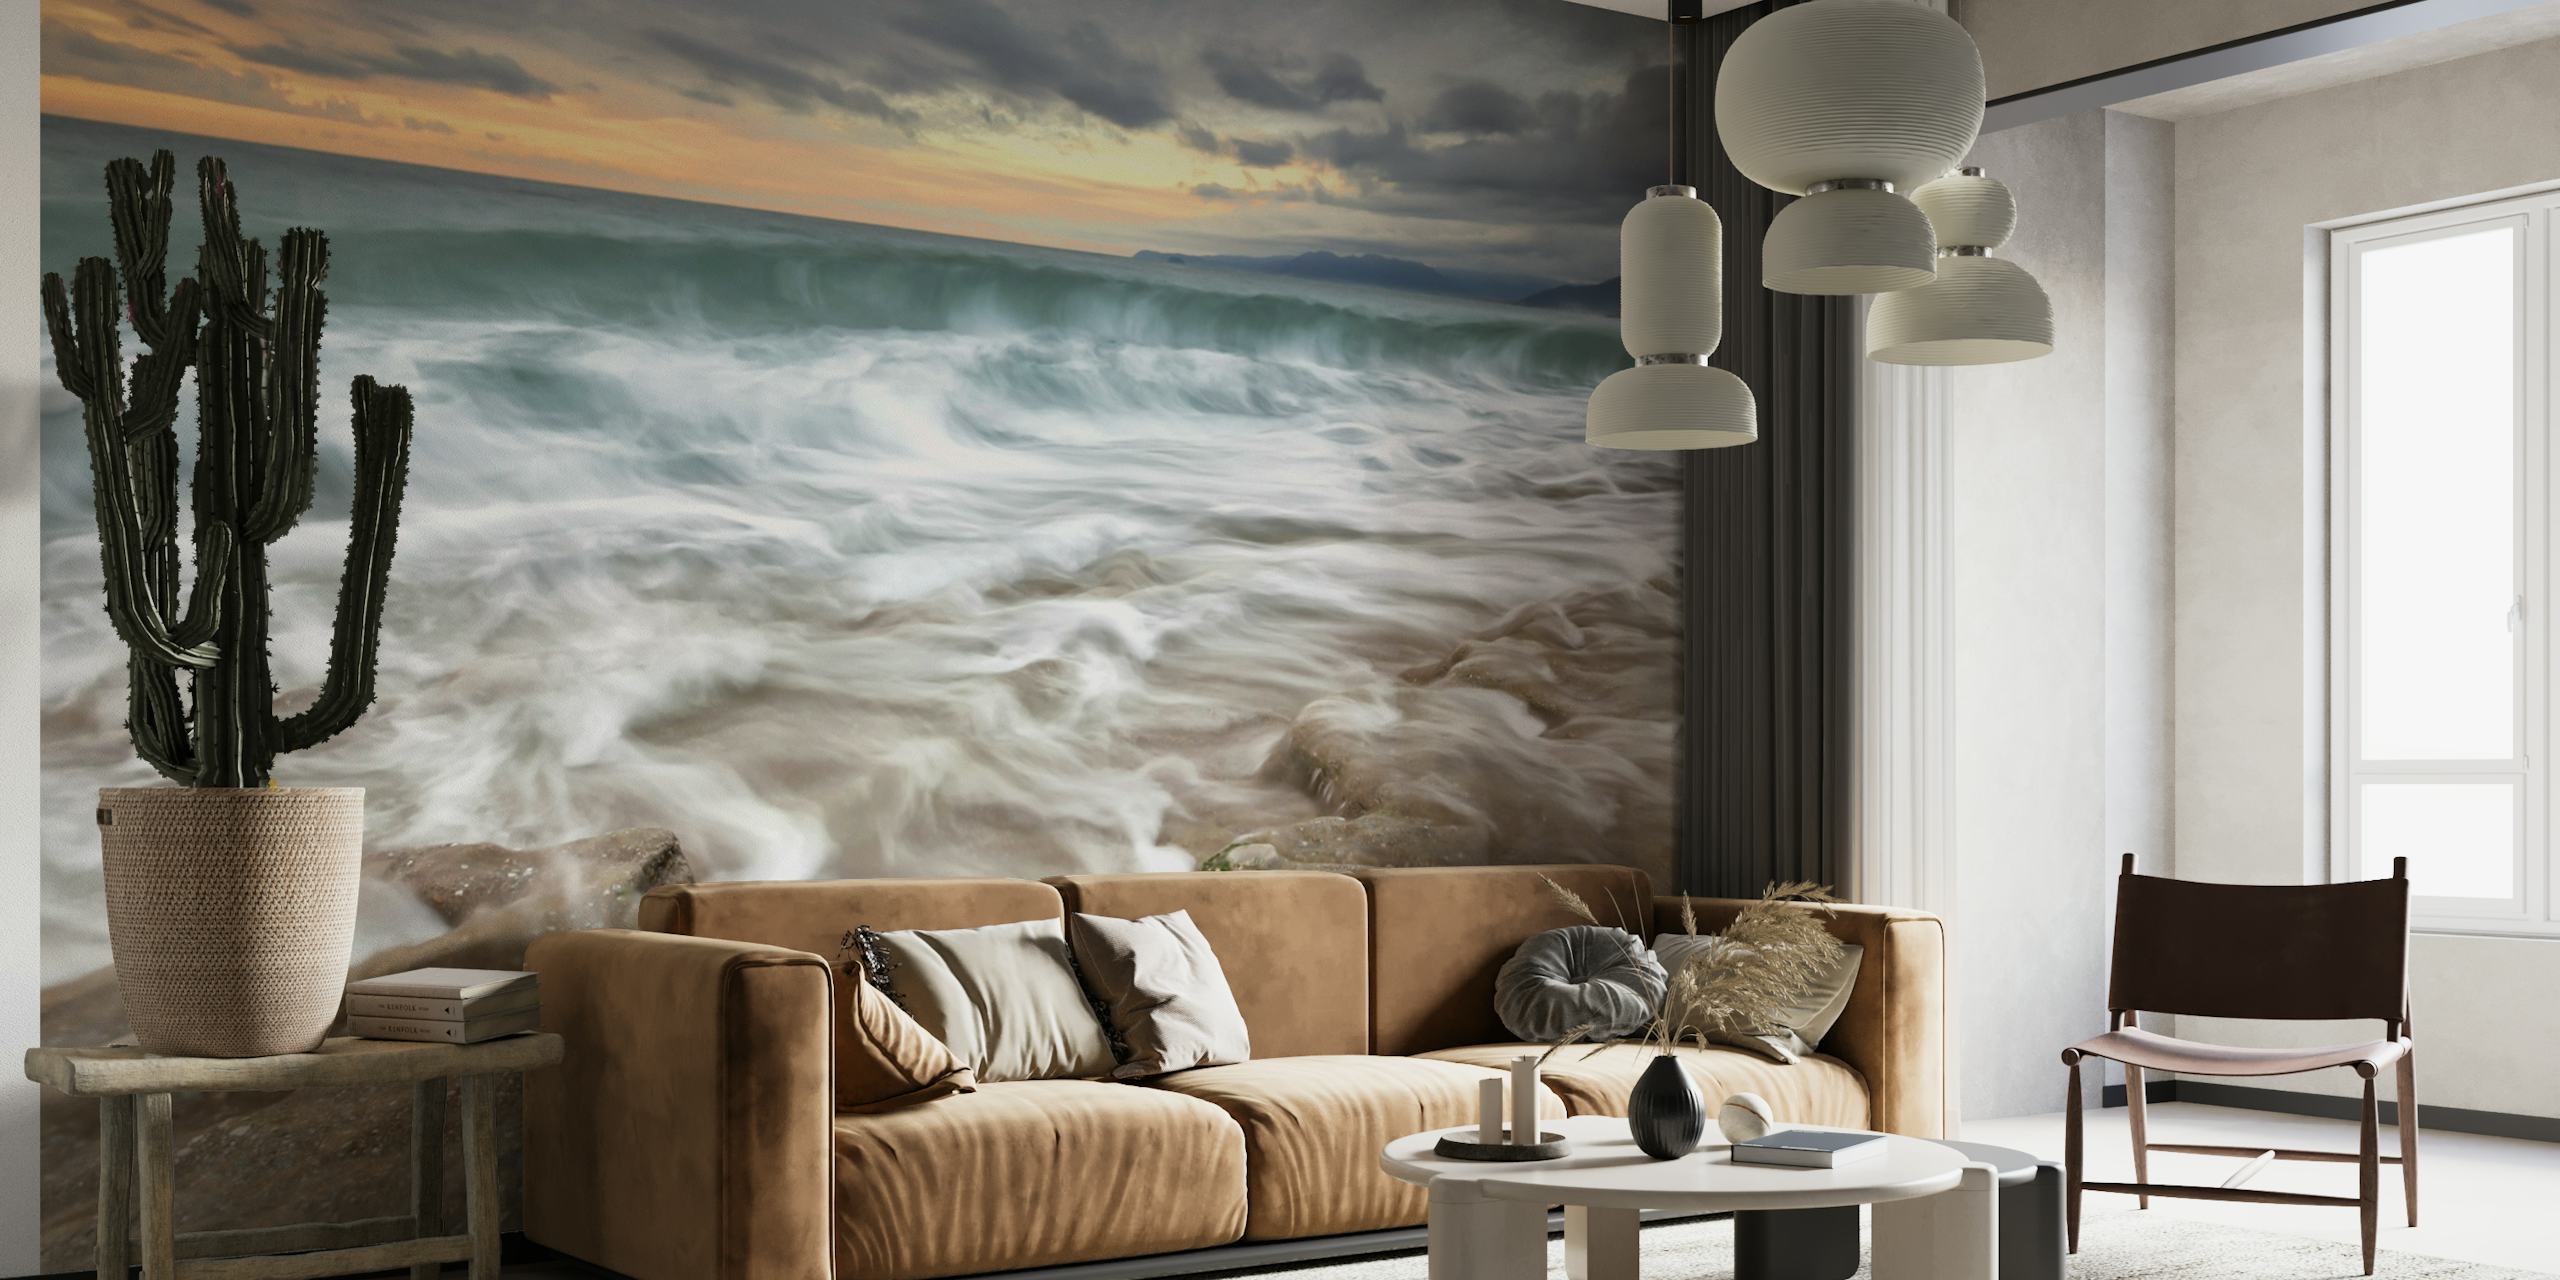 Fotomural vinílico de parede dinâmico de ondas do mar sob céu tempestuoso